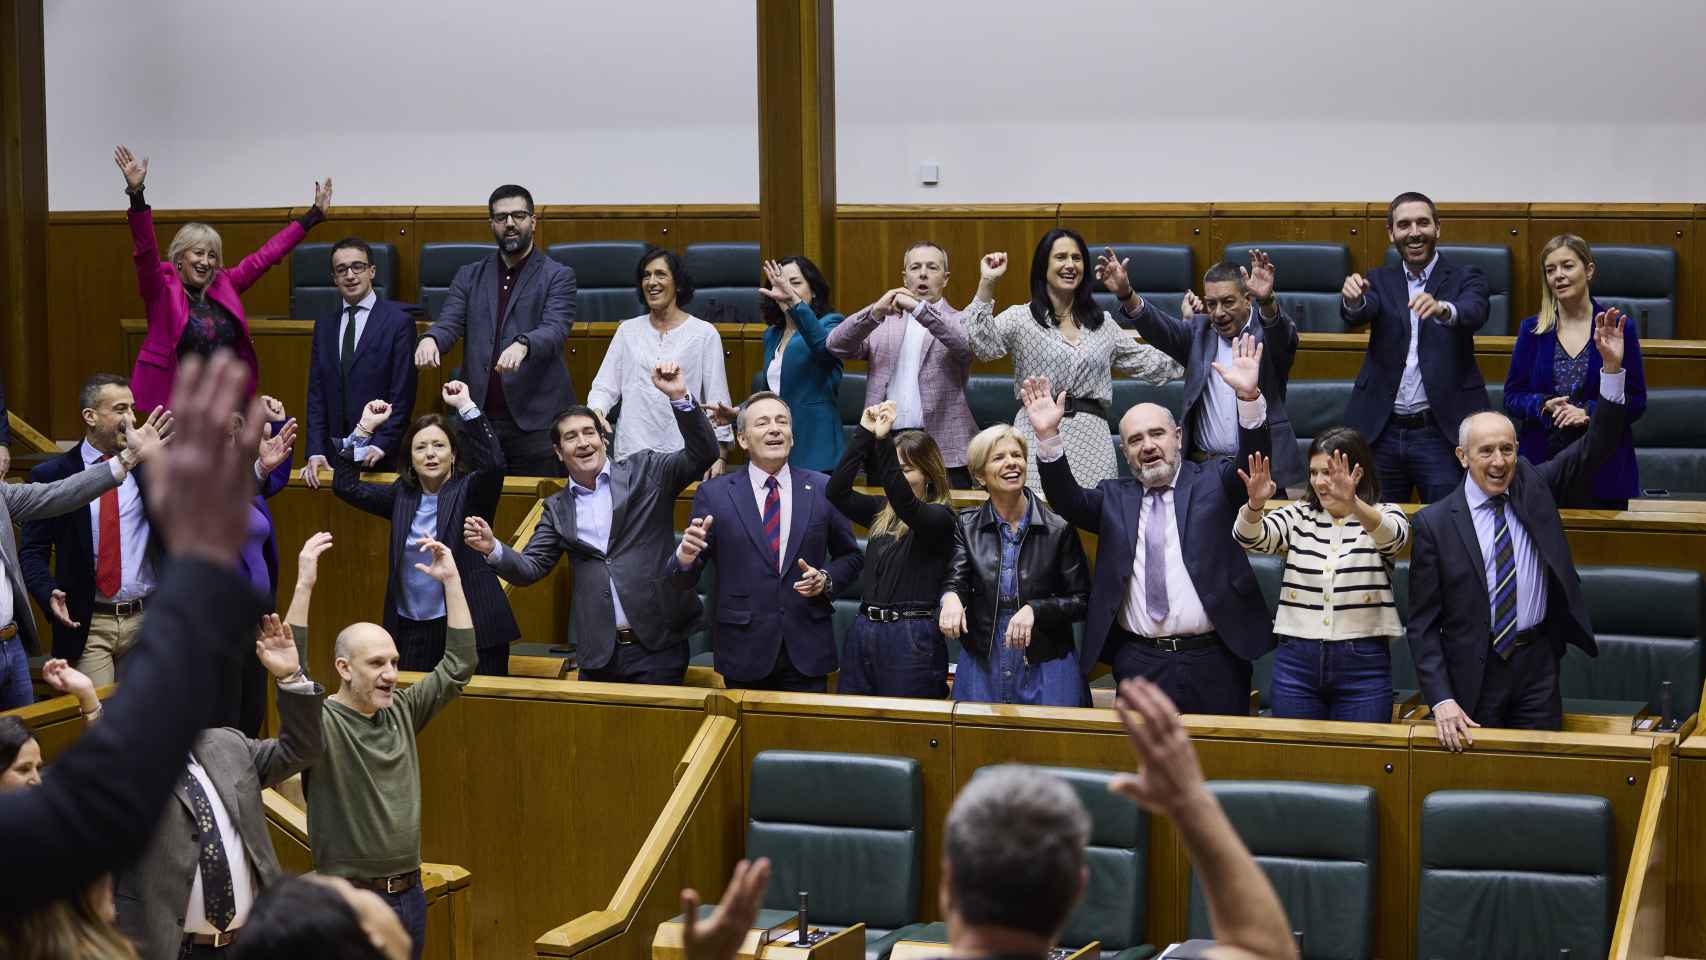 Los parlamentarios vascos cantan juntos contra el cáncer / Legebiltzarra